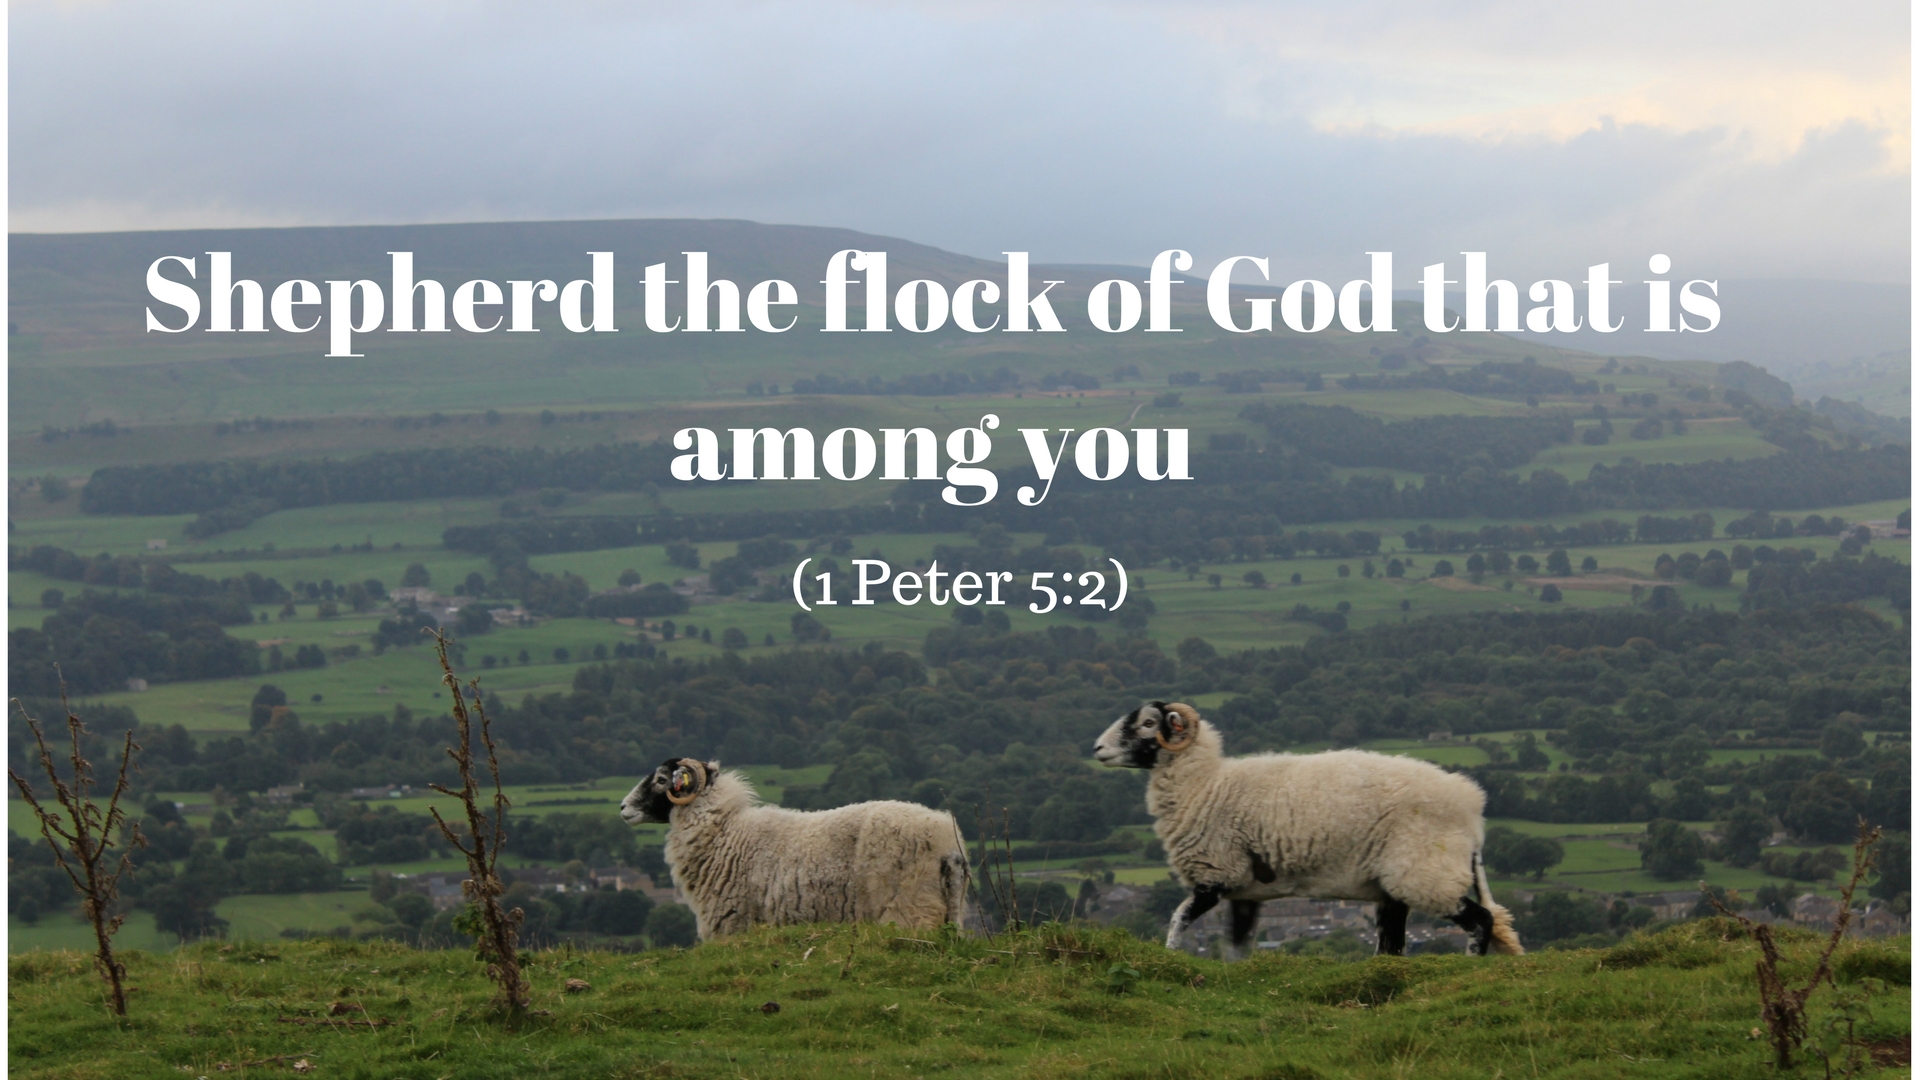 Shepherd the flock of God that is among you. - David Maby